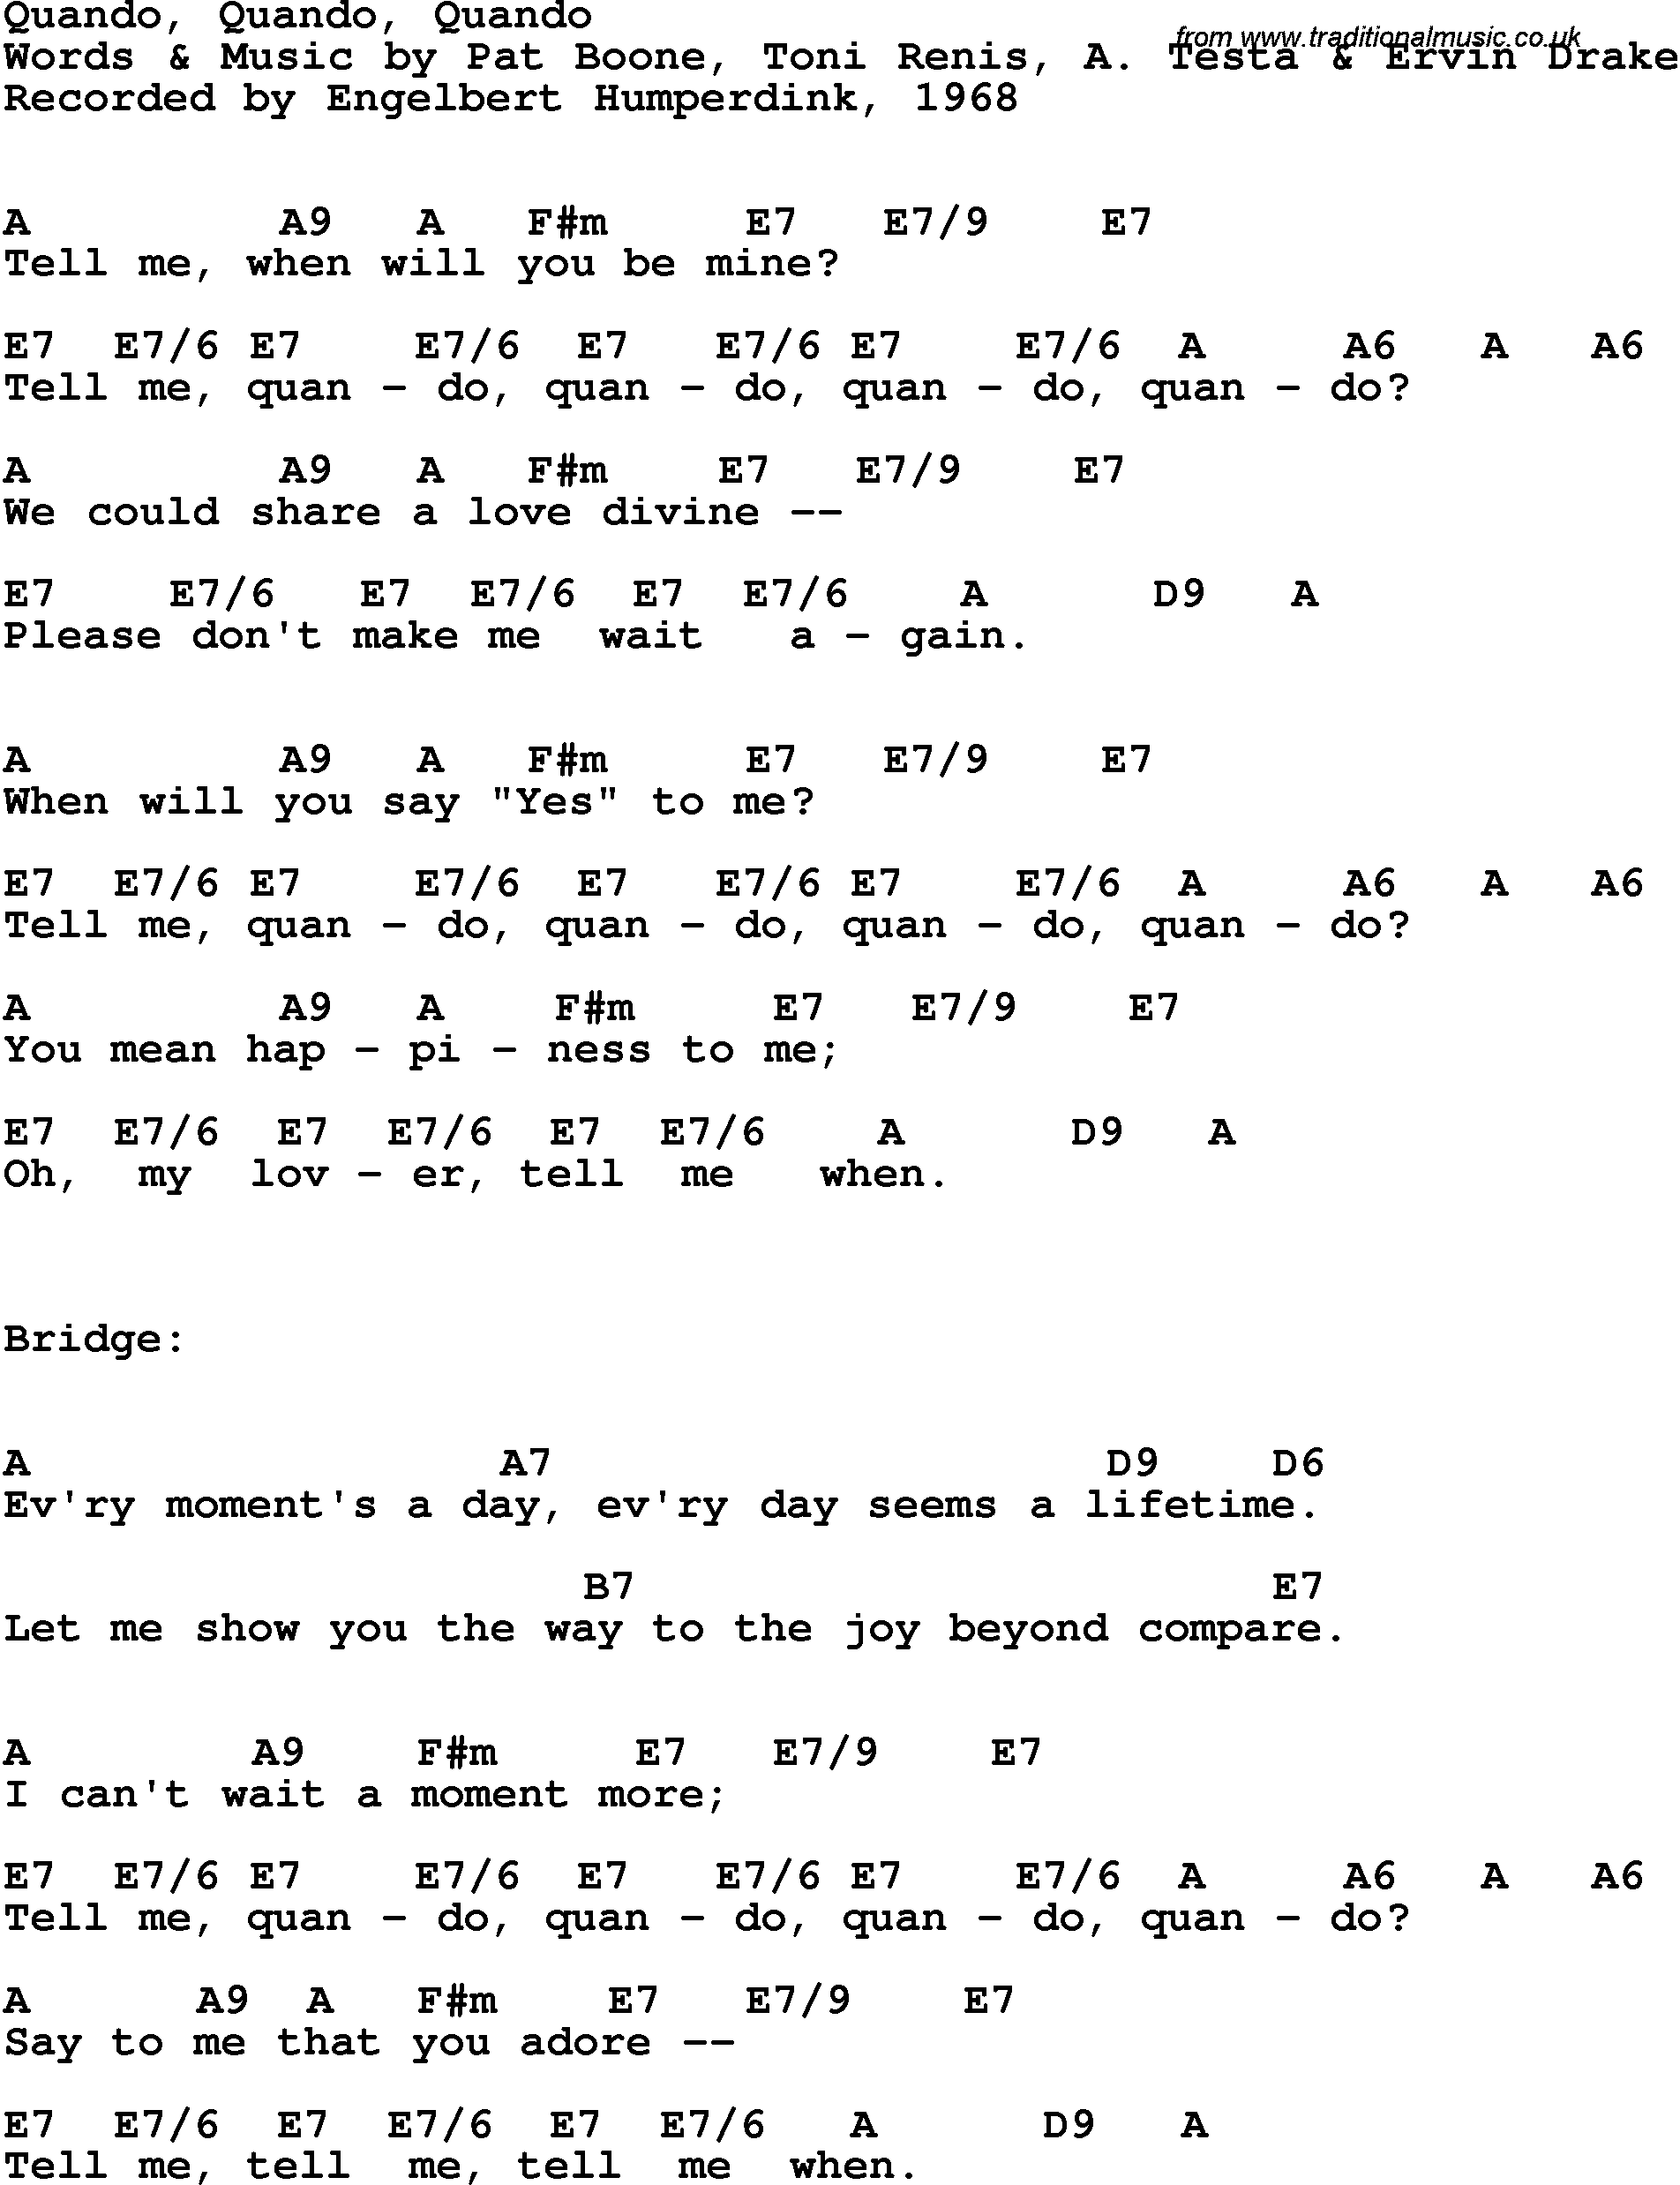 Song Lyrics with guitar chords for Quando, Quando, Quando - Englebert Humperdink, 1968